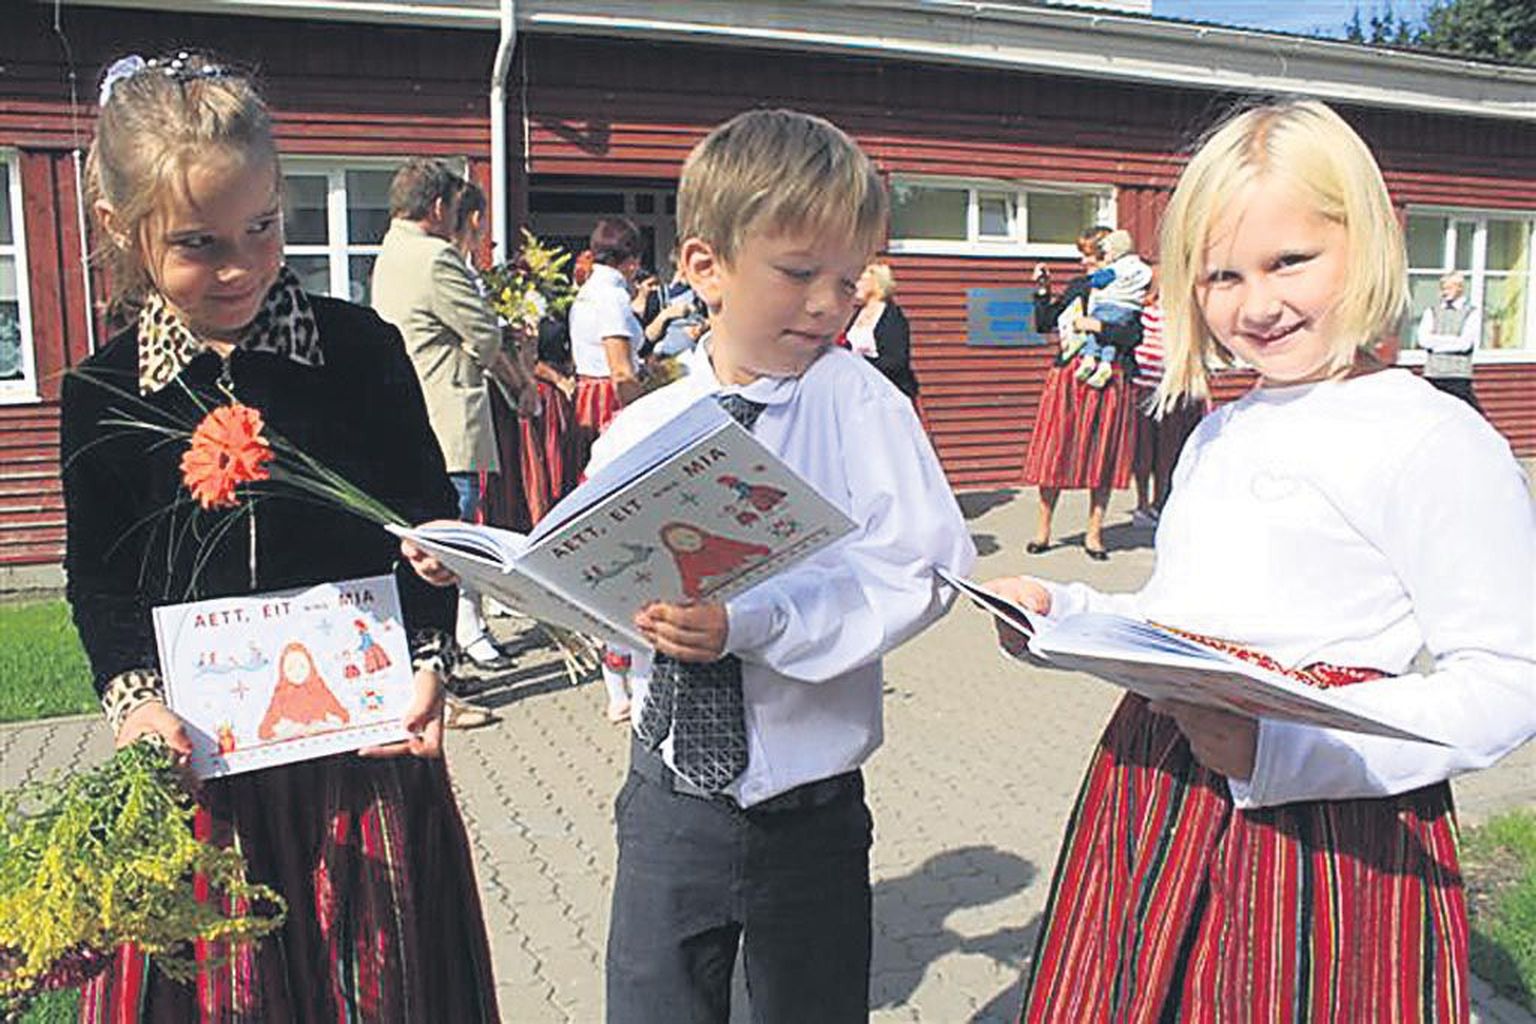 Kihnu kooli esimese klassi õpilased Kärolin Lamend, Rasmus Lilles ja Pilleriin Köster uurisid eile koolimaja ees kihnukeelset raamatut “Aett, eit ning mia”, mis ongi nende esimene õpik.